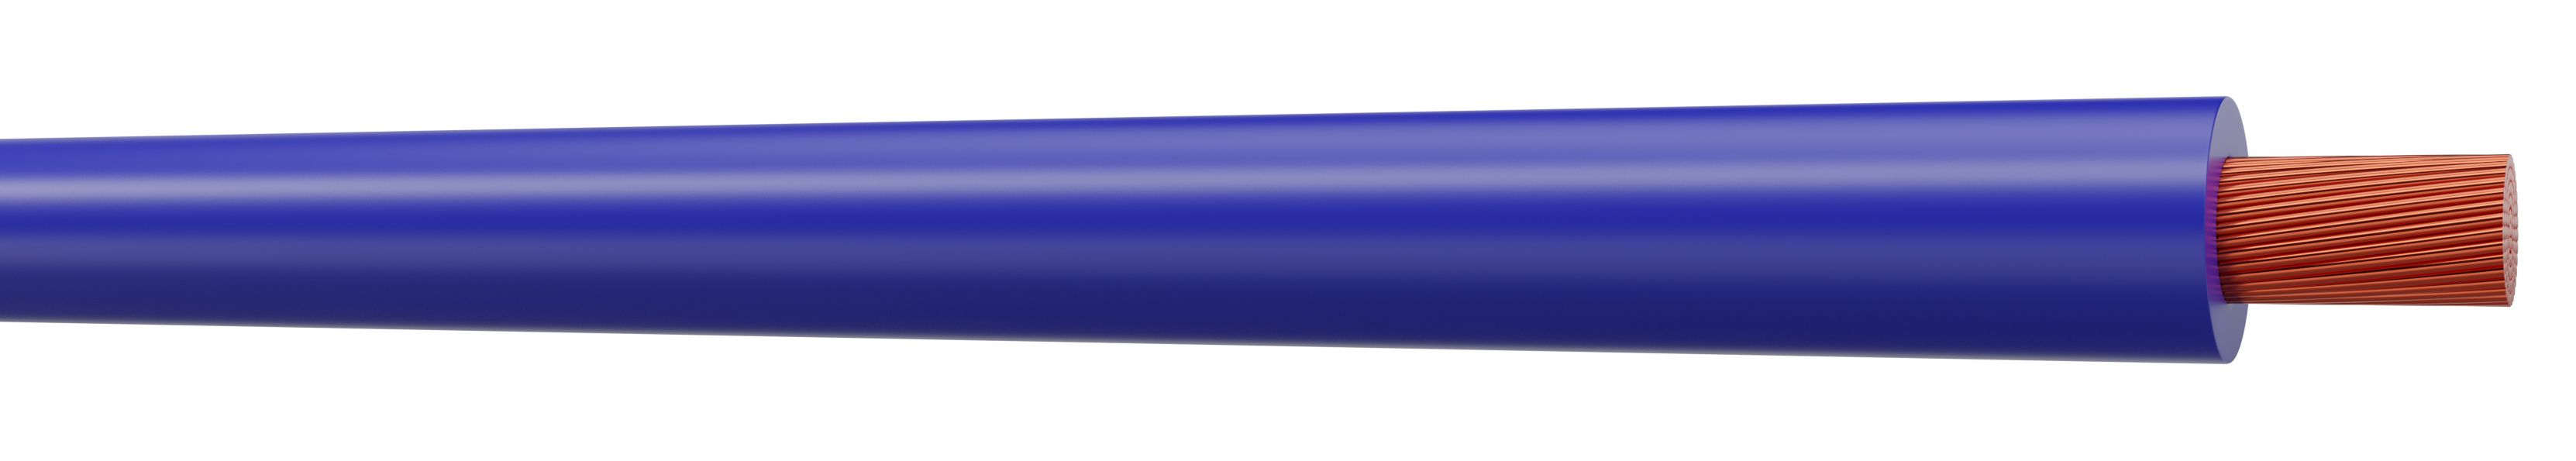 marron neutre Rouleau complet et longueurs personnalisées disponibles jaune/vert Bleu vif Câble monoconducteur 6491 X de 1,5 mm 